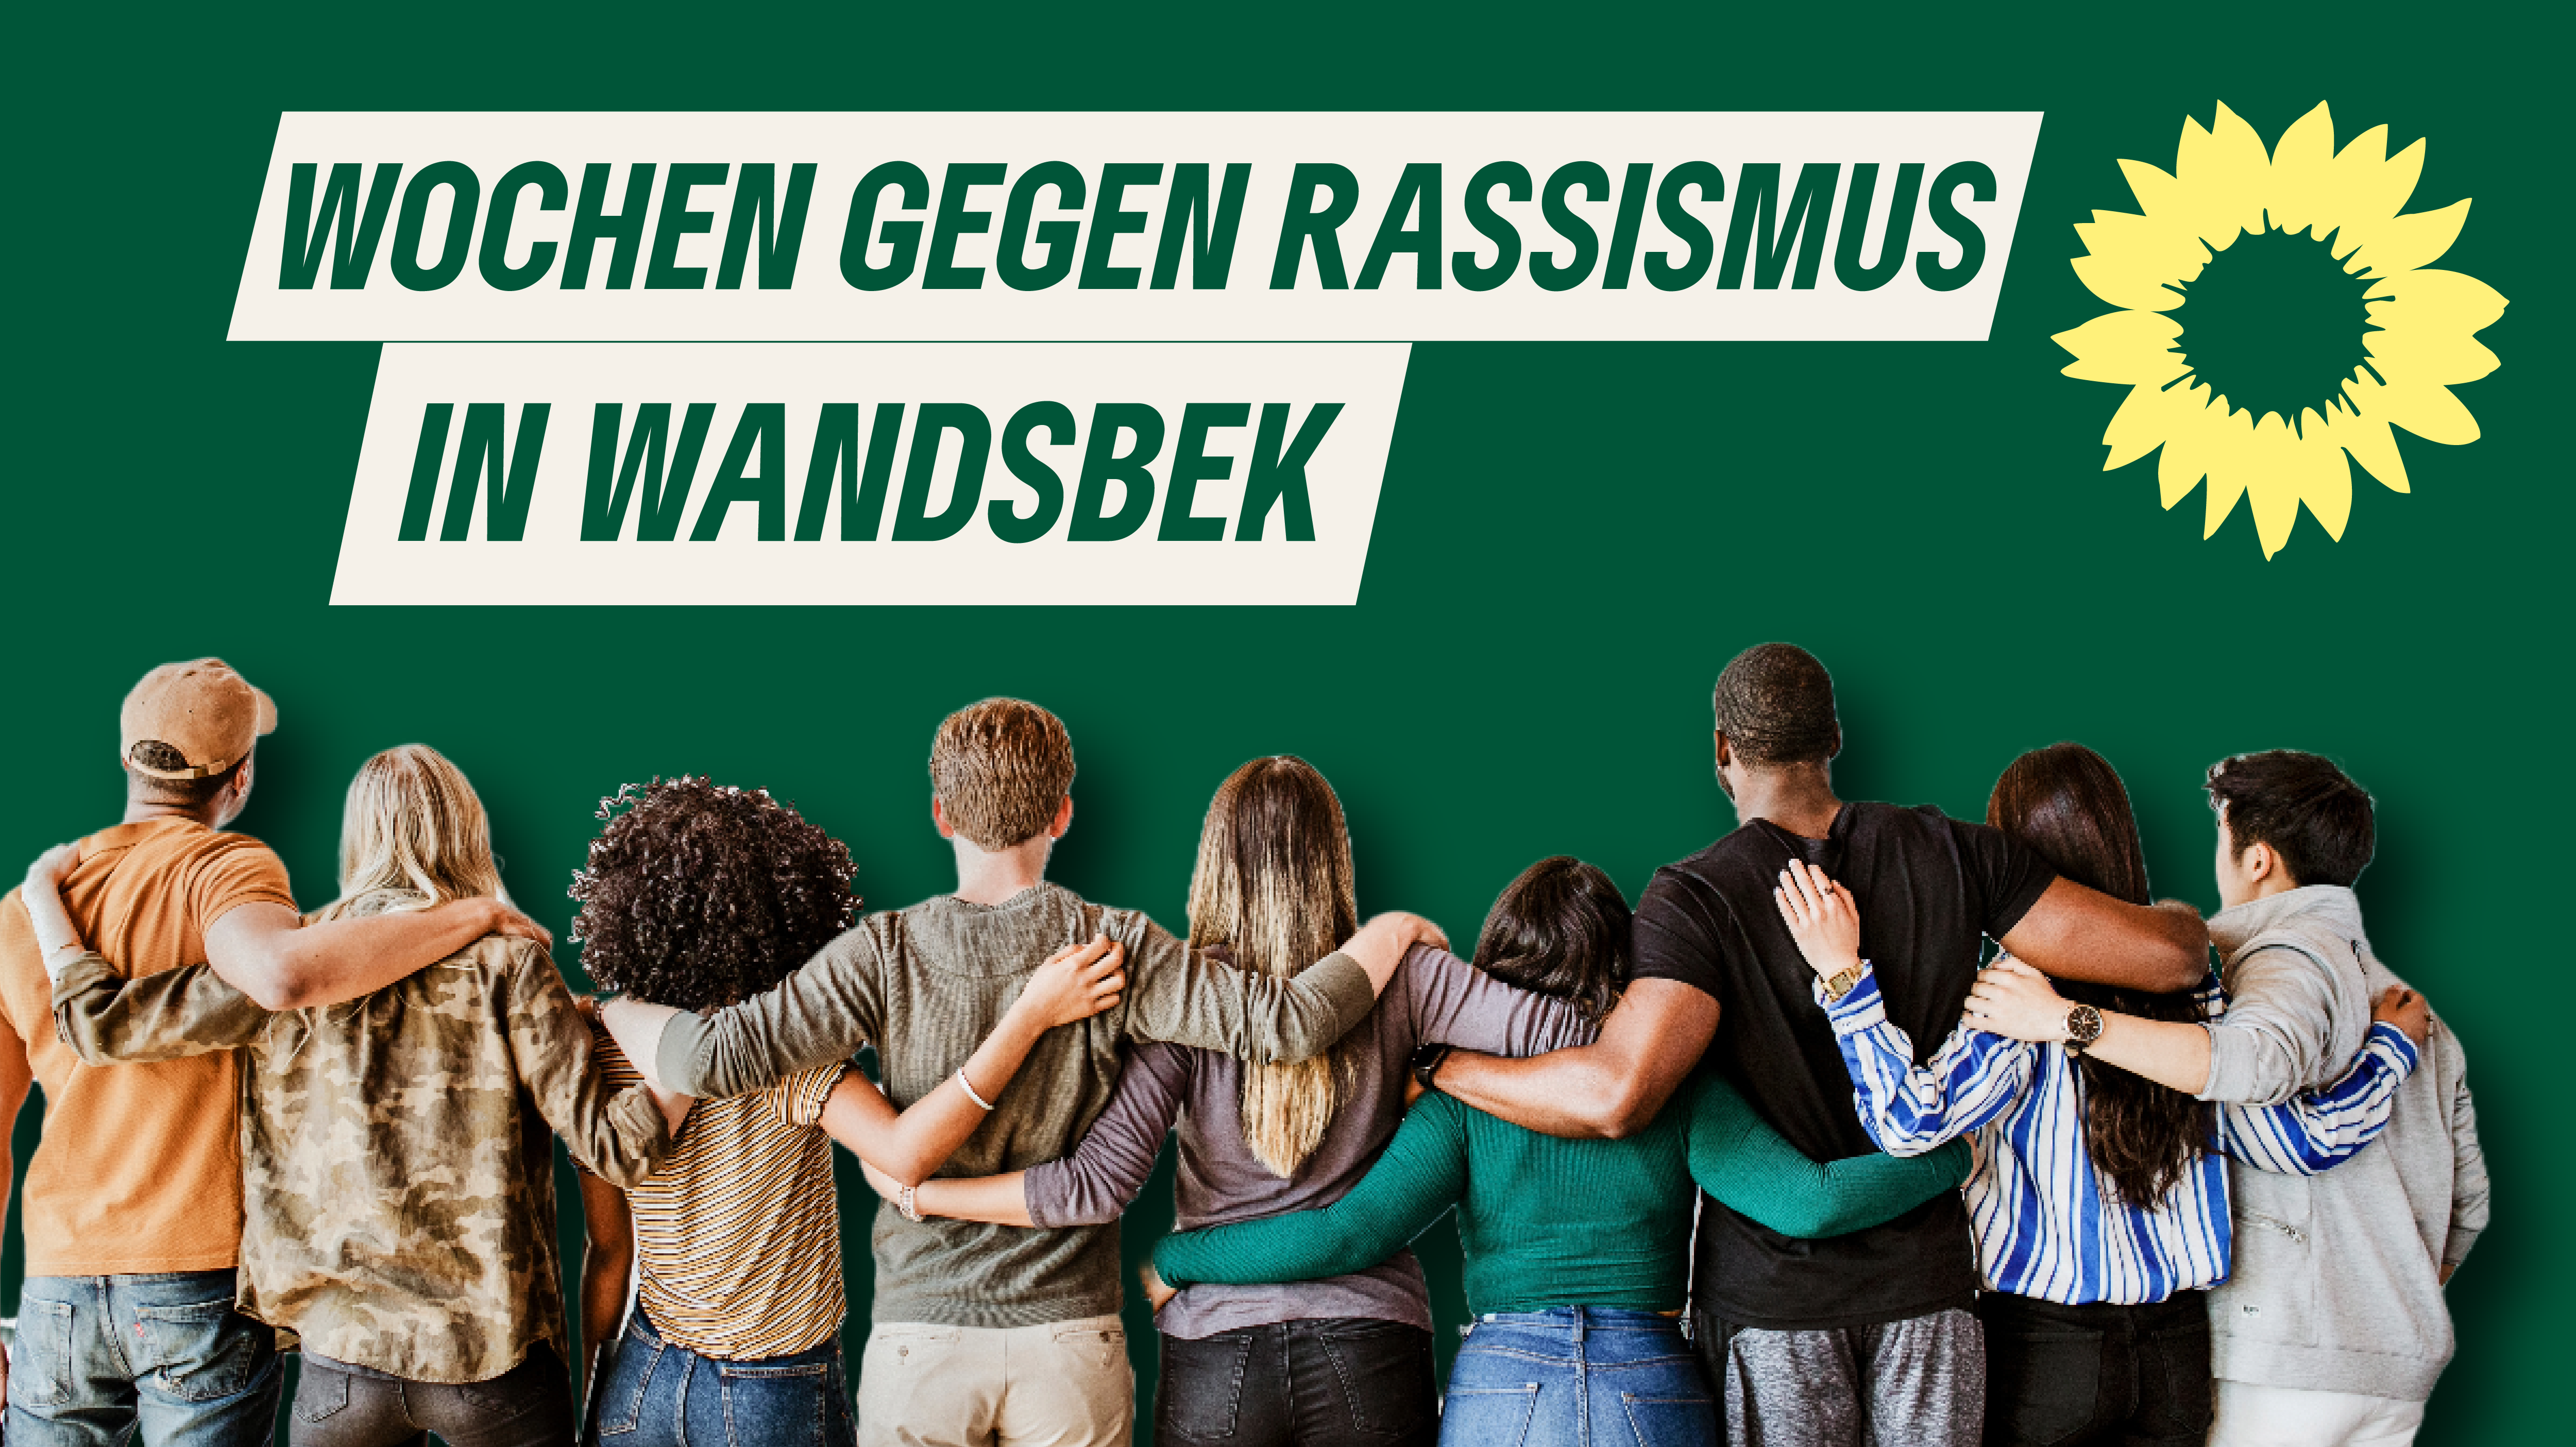 "Wochen gegen Rassismus un Wandsbek" vor grünem Hitergrund mit Sonnenblumen-Logo und Gruppe von hinten, die sich ihre Arme auf die Schultern gelegt haben